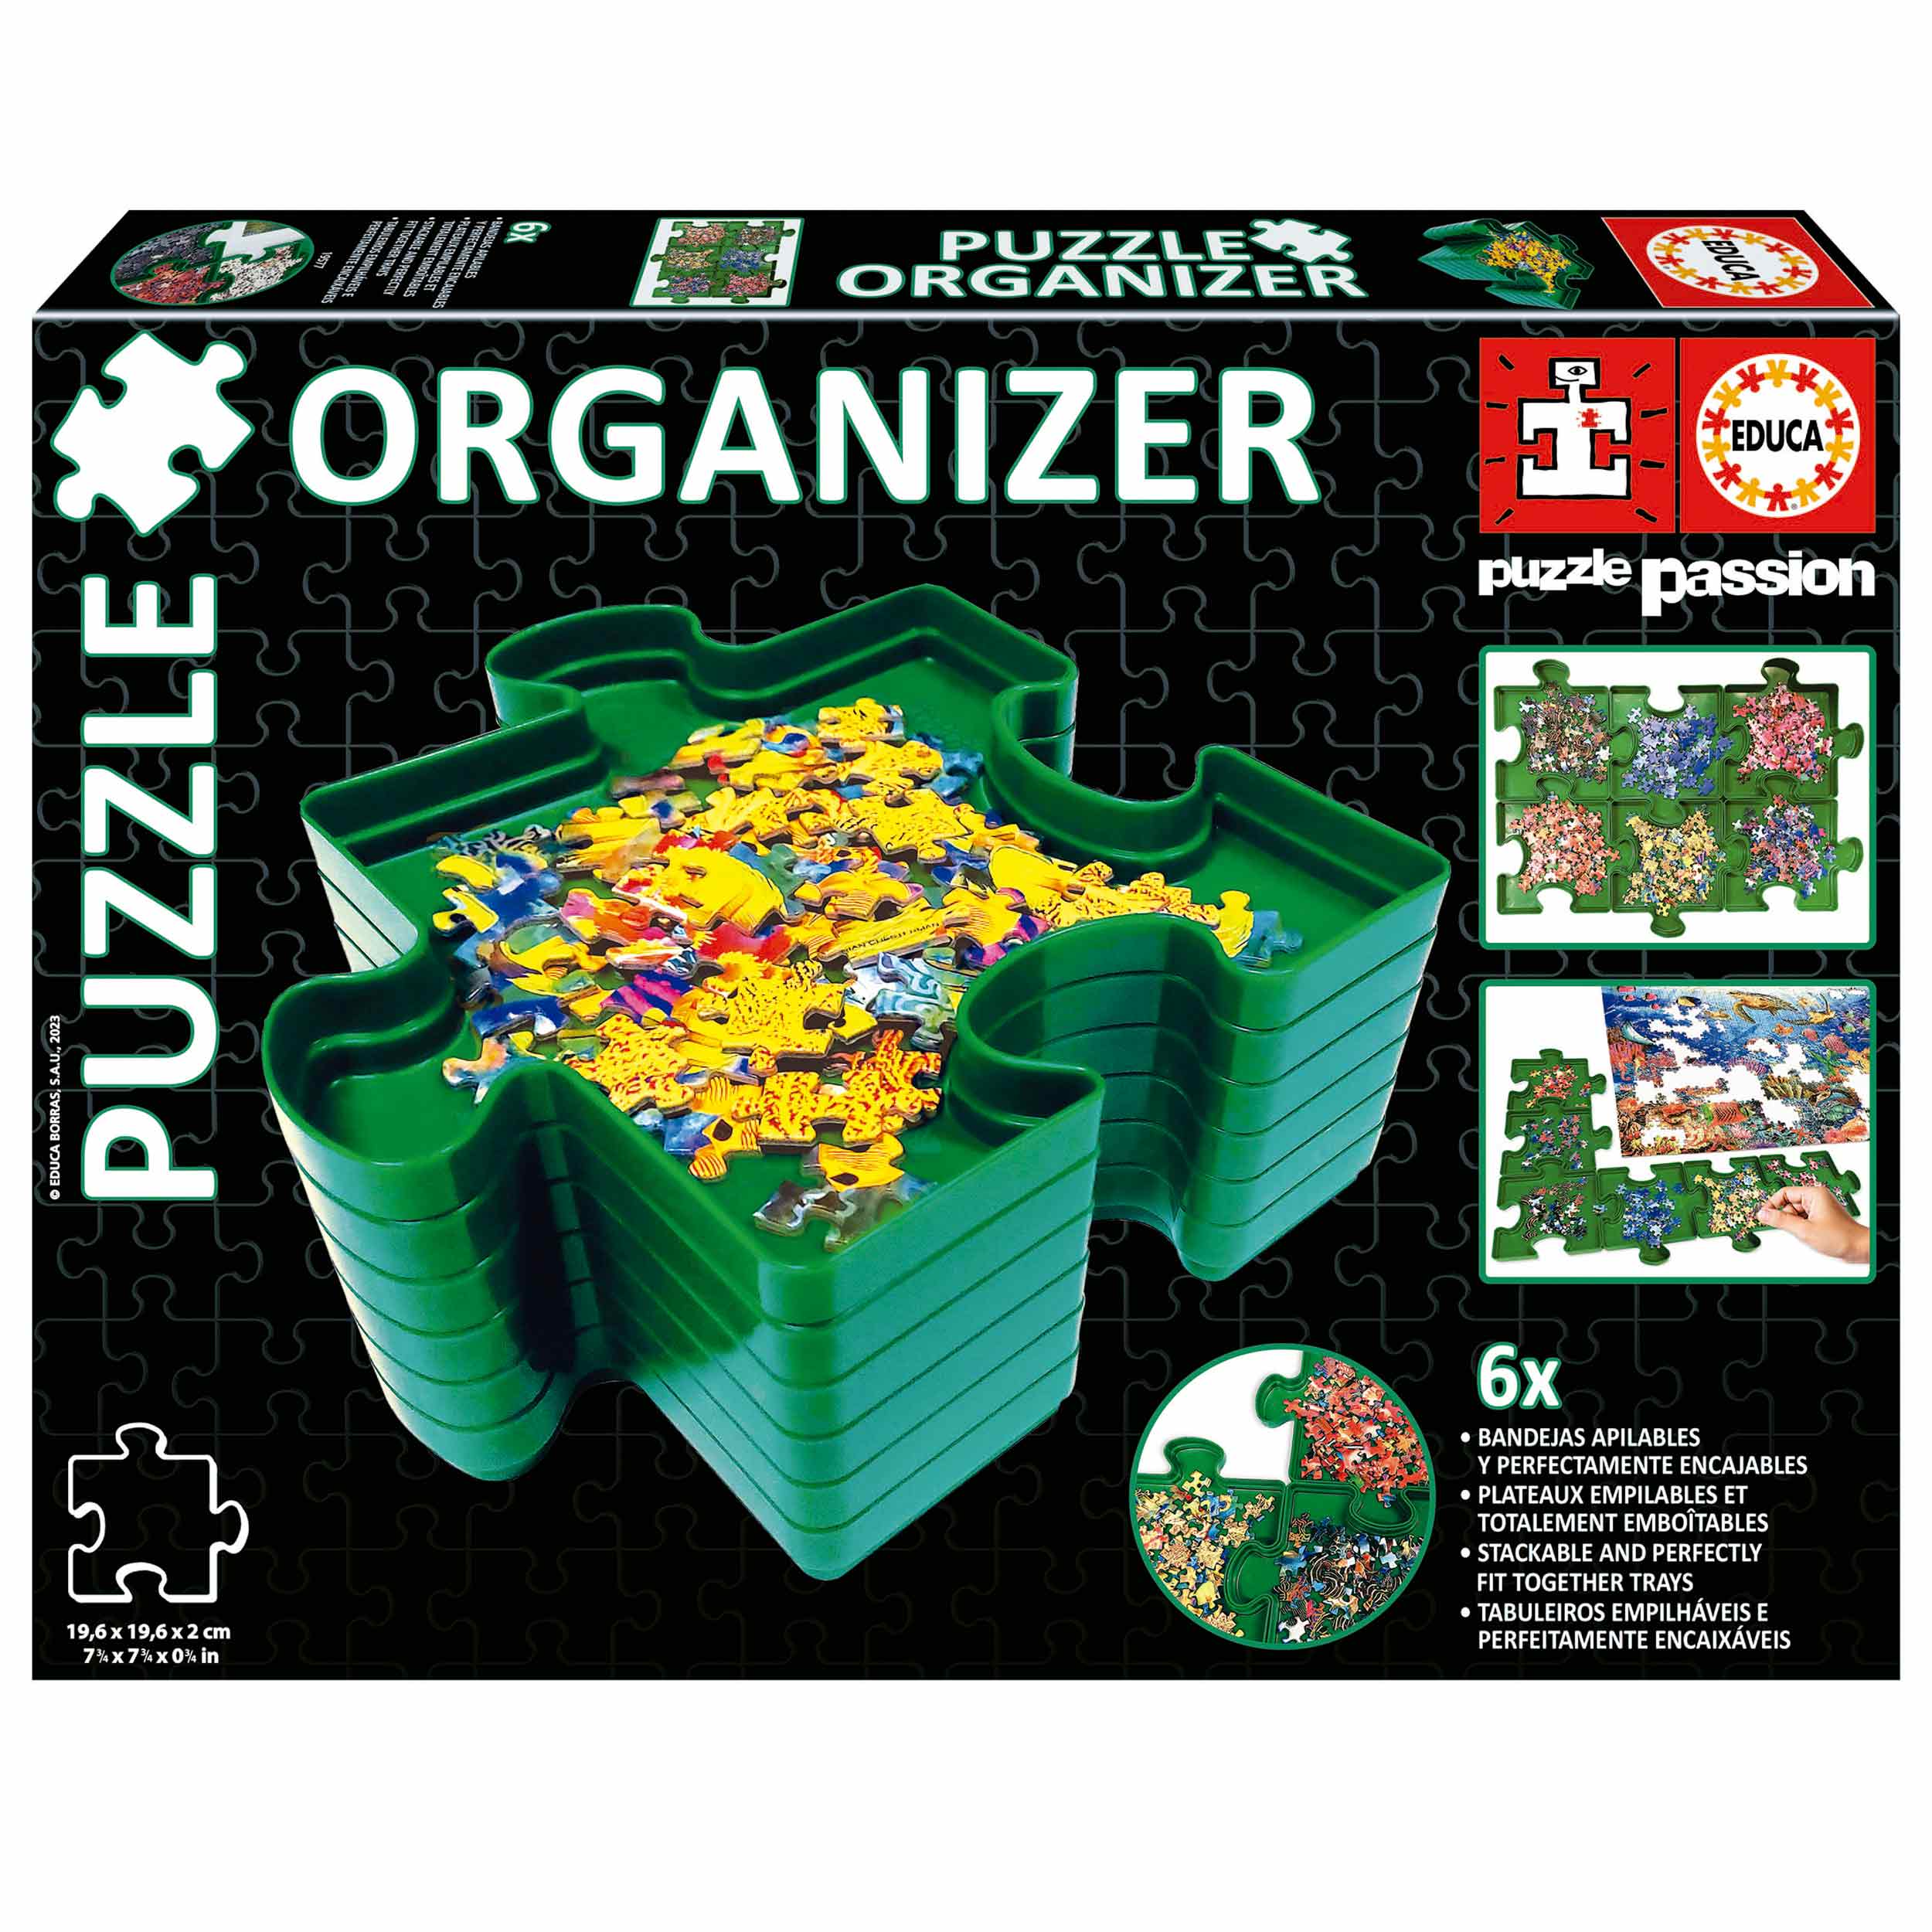 Puzzle EDUCA 3000 Piezas 16018, EDUCA Juegos y Regalos